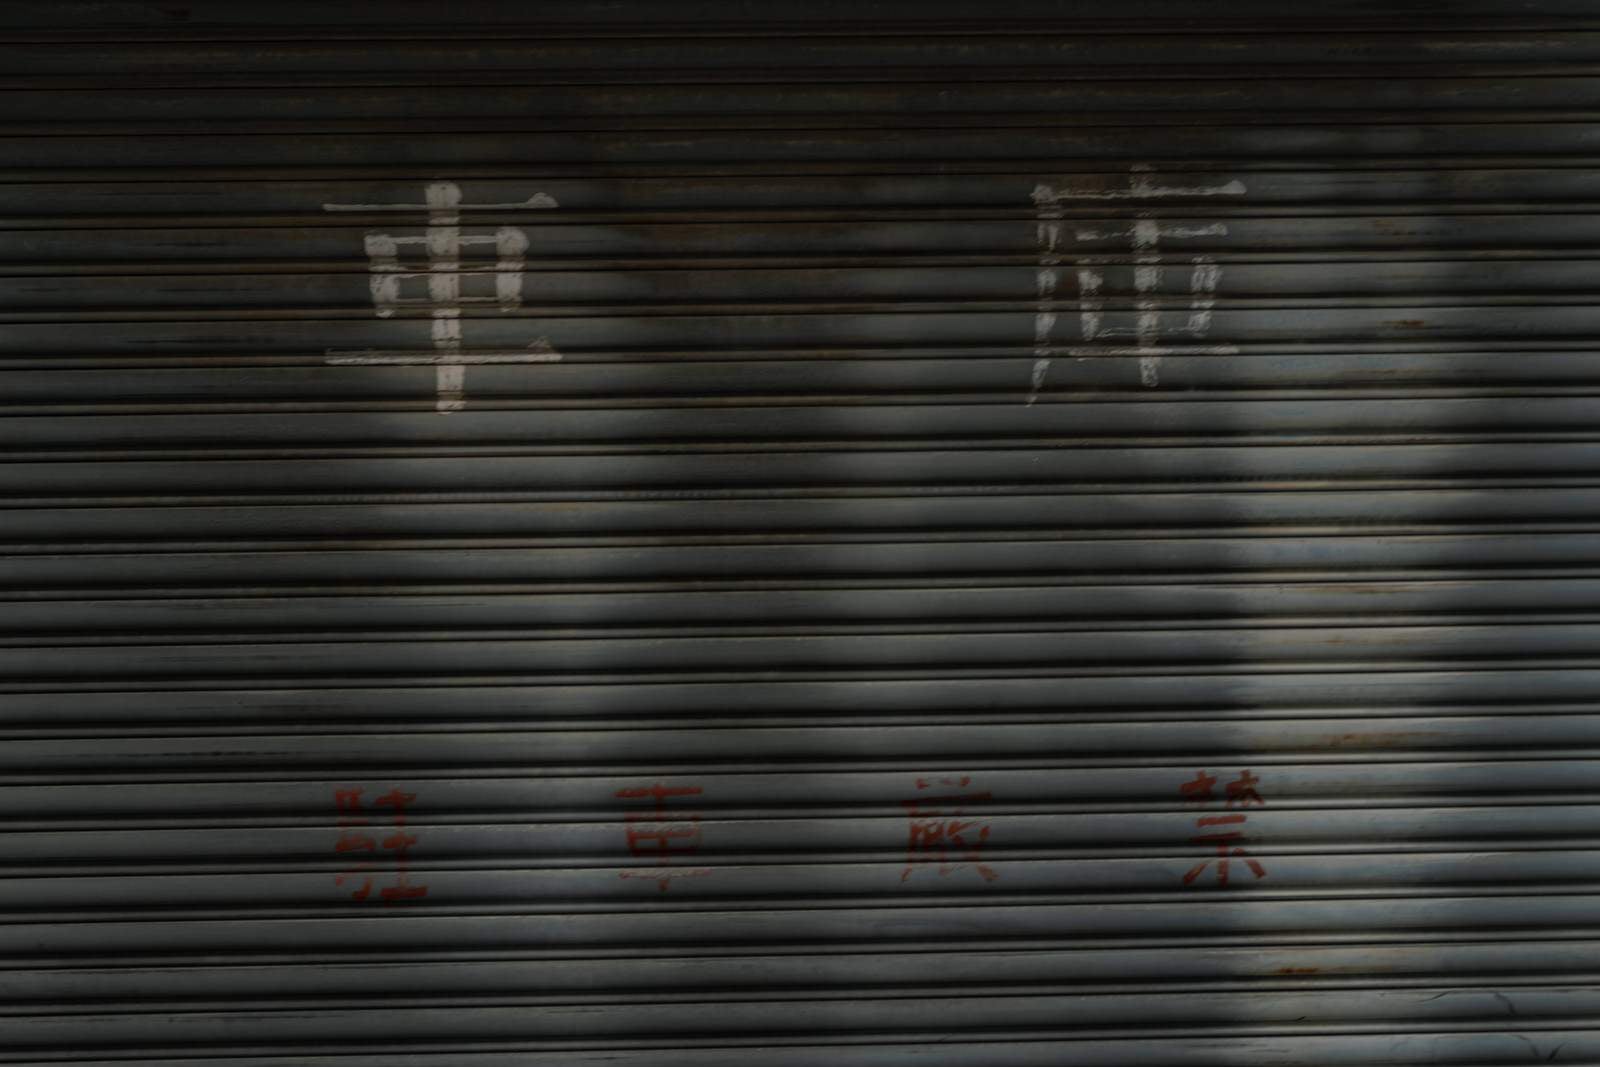 「漢字で車庫と書かれたシャッター」の写真